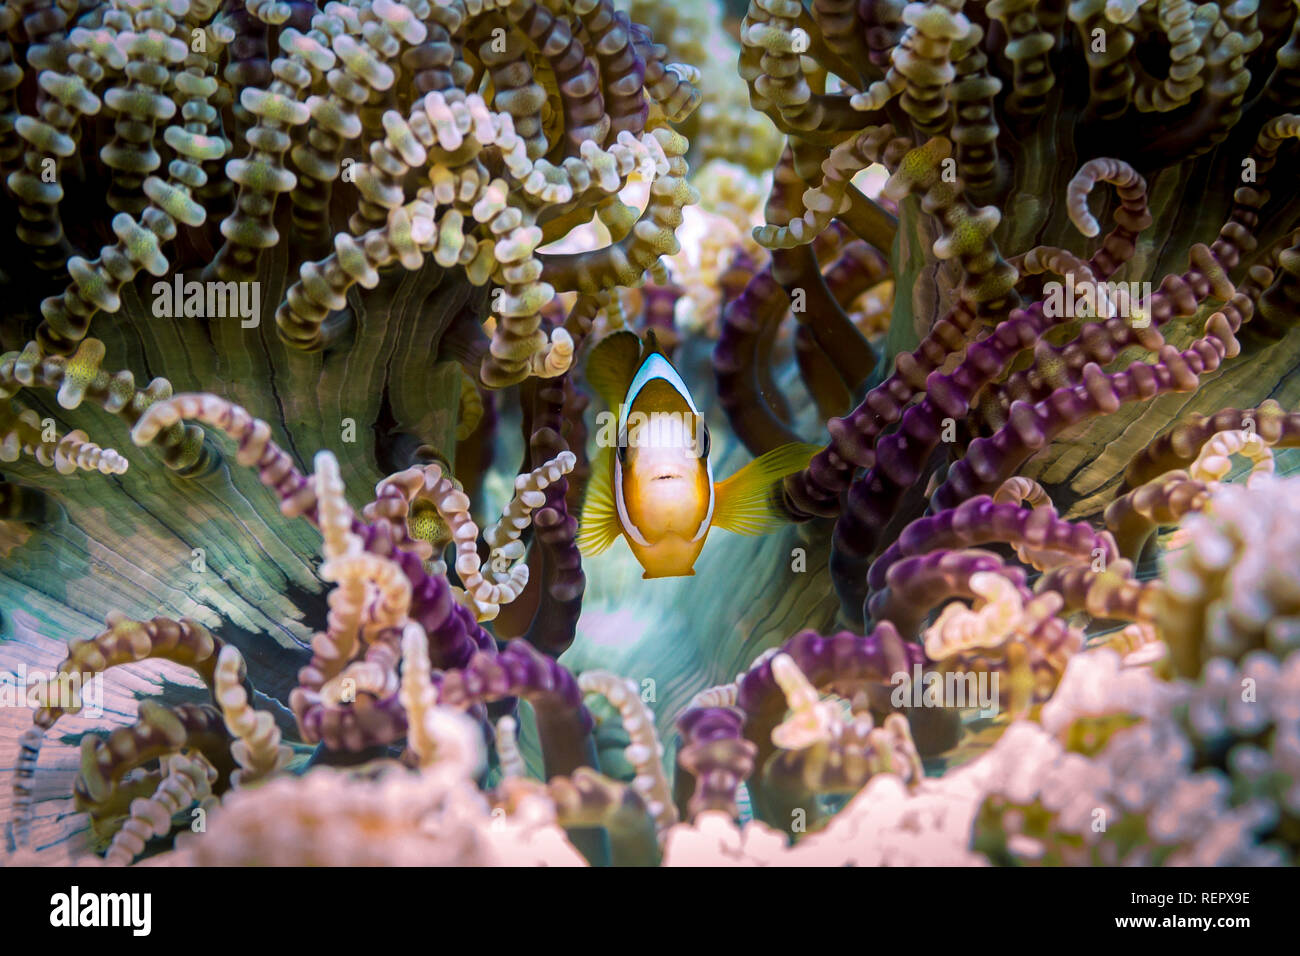 Anemonefish in beaded anemone, facing camera Stock Photo